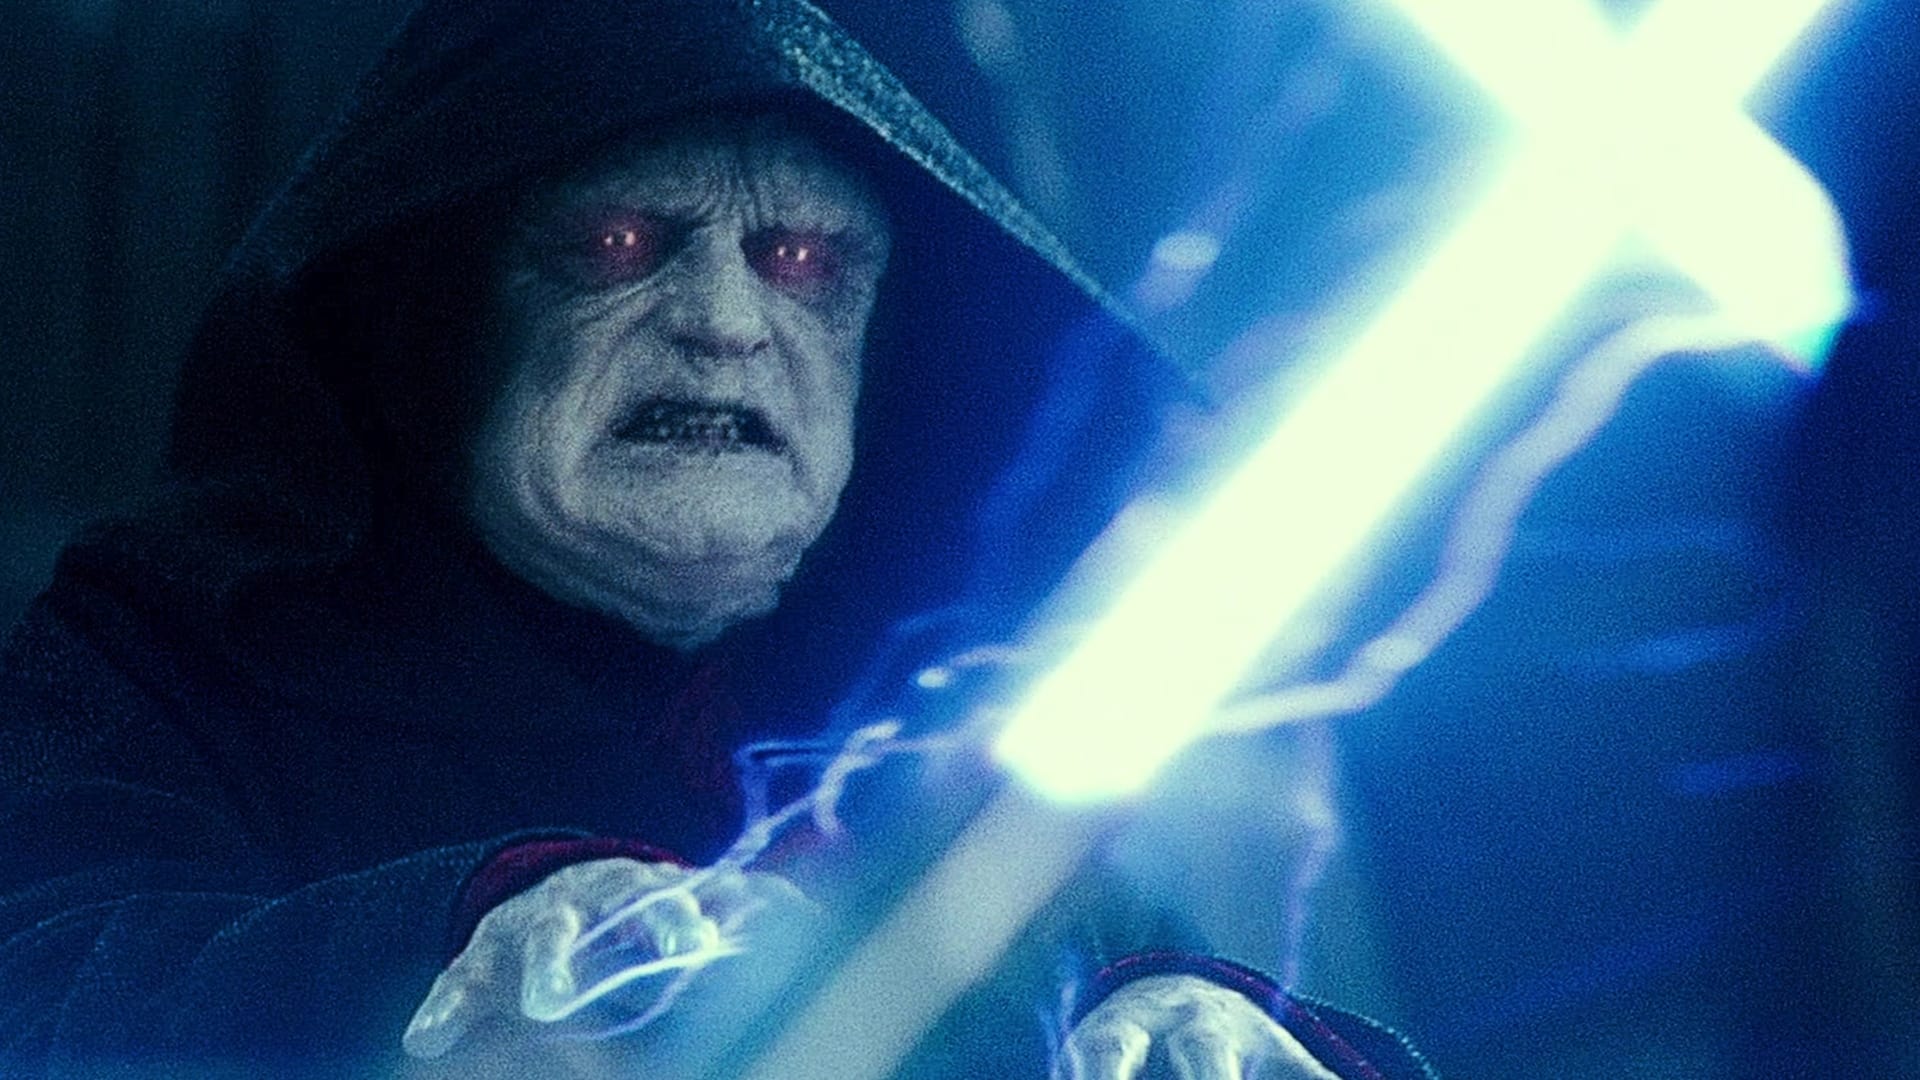 Image du film Star Wars Episode IX : l'ascension de Skywalker xkmmfnjzu4xszd0k5m6olkeddlujpg